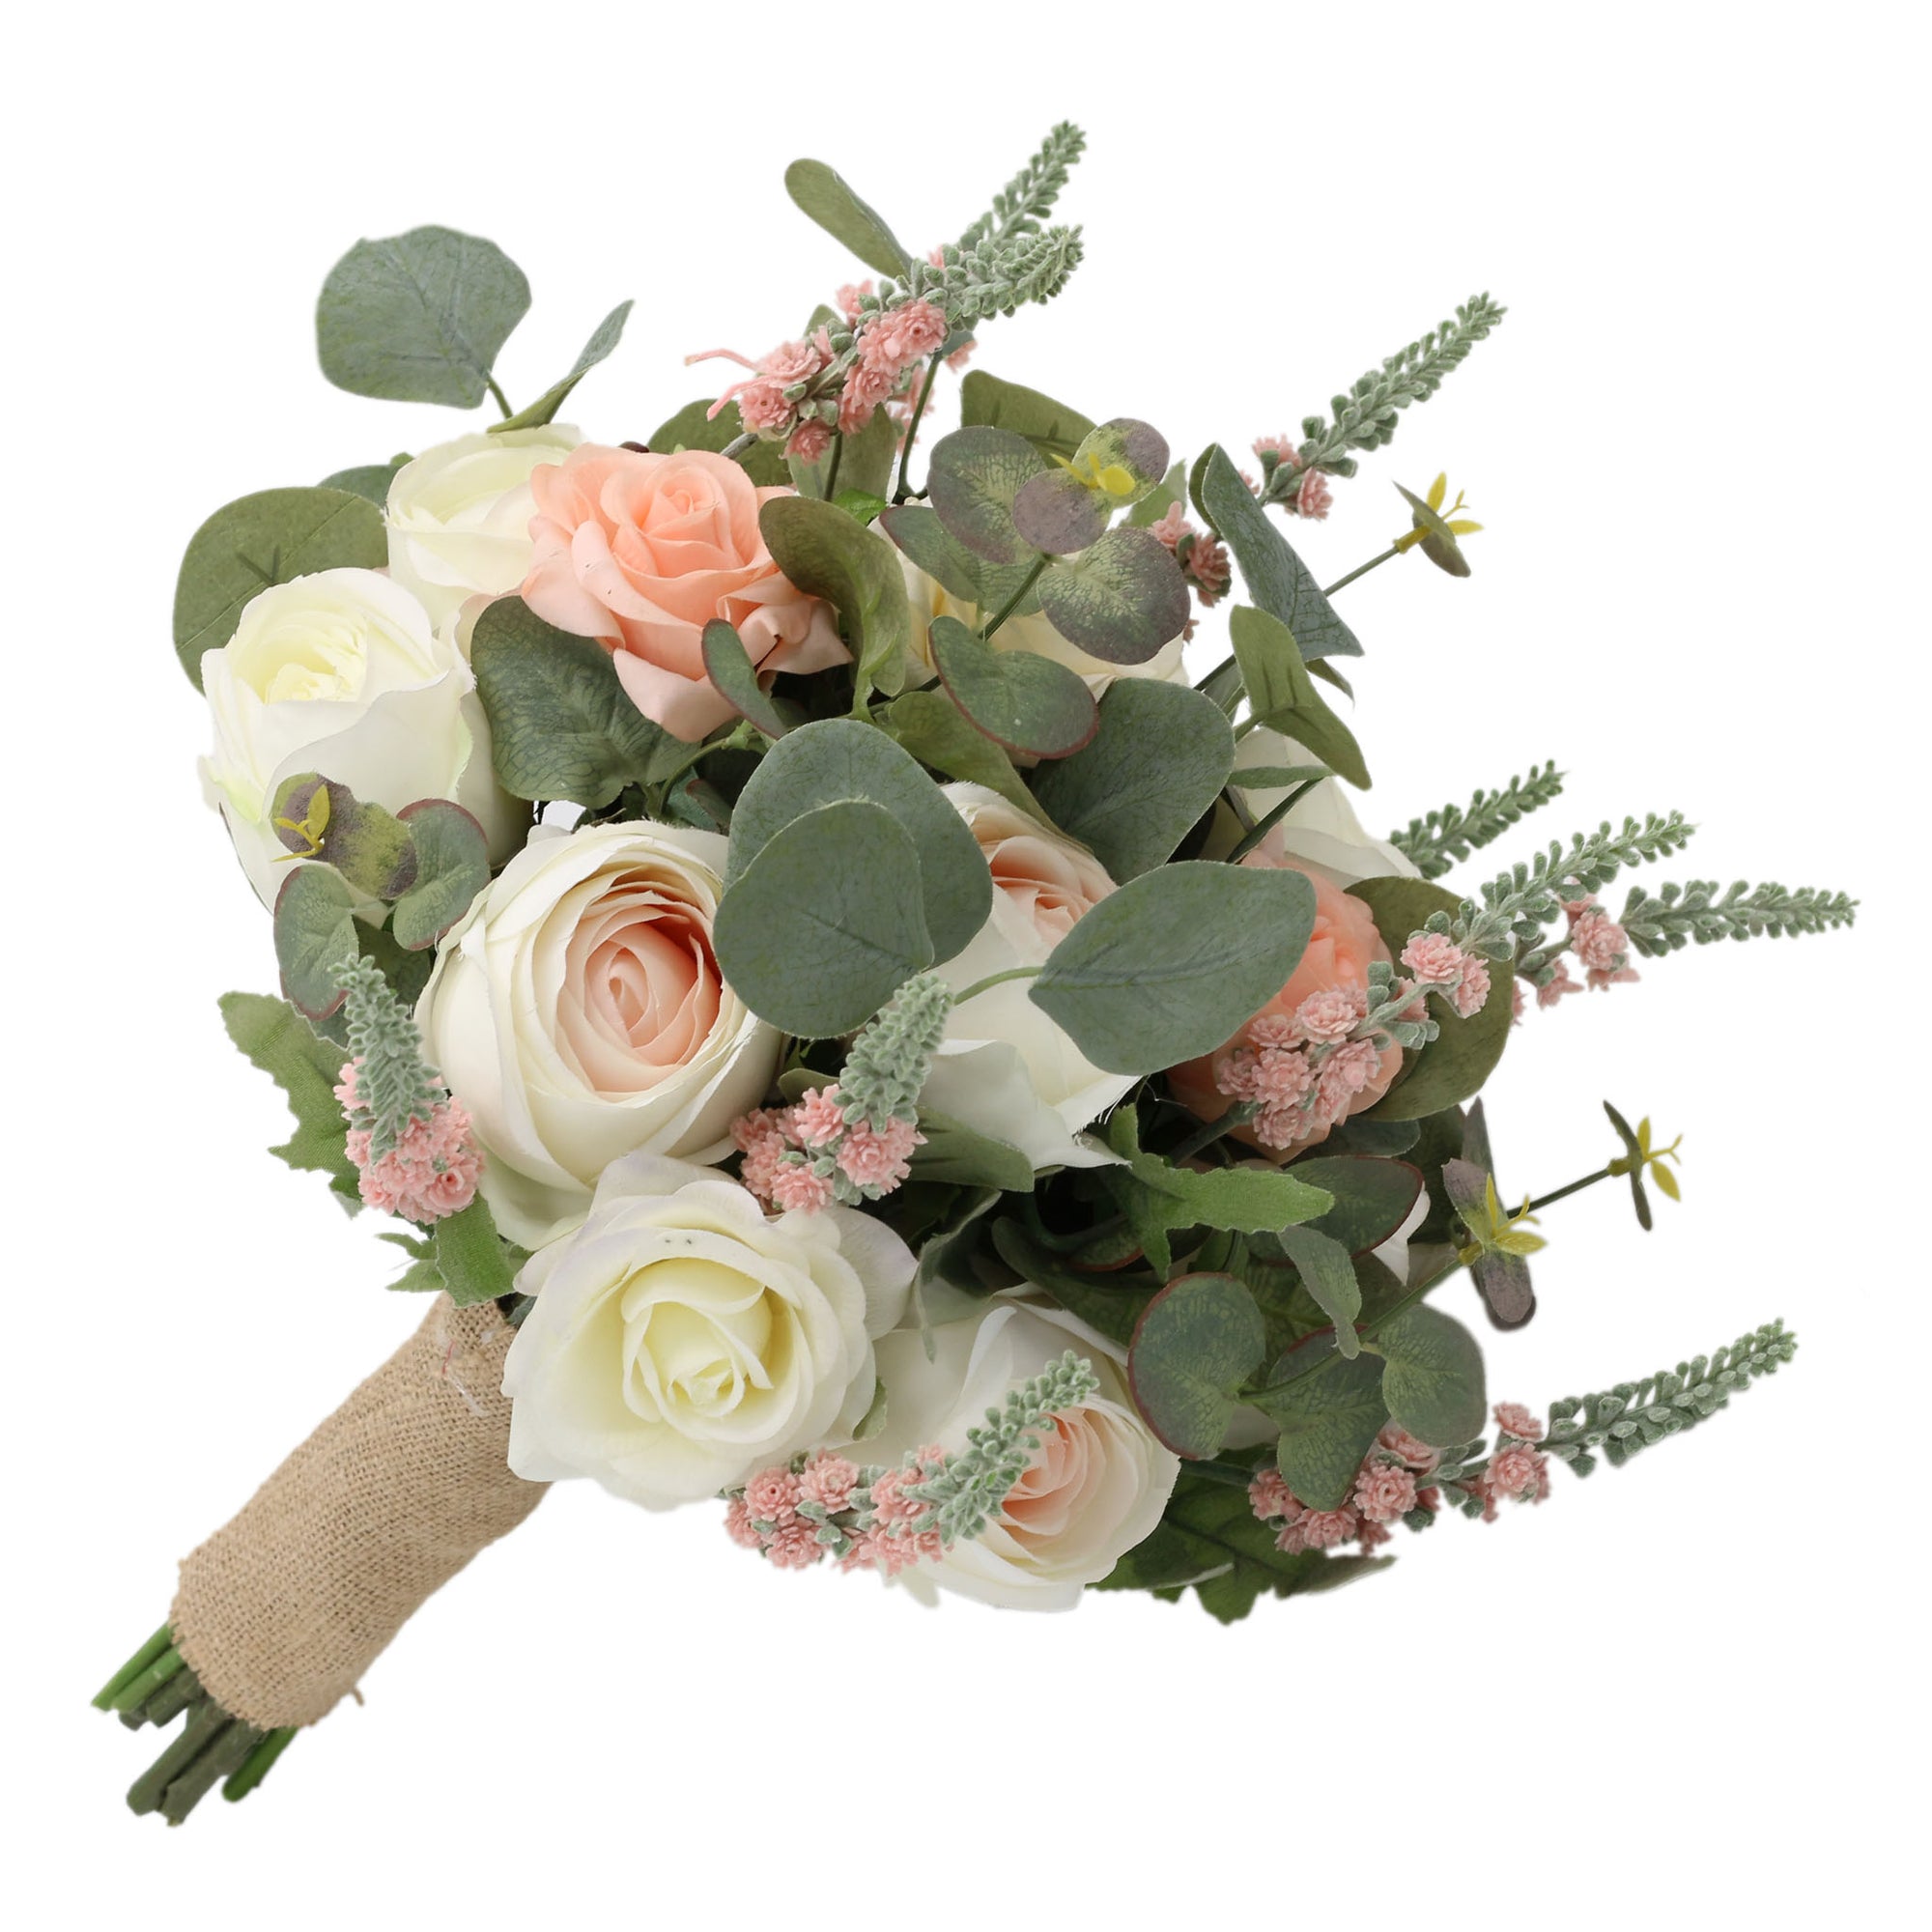 Spring Wedding Rustic Bridal Bouquet Blush Ivory Wedding Flowers